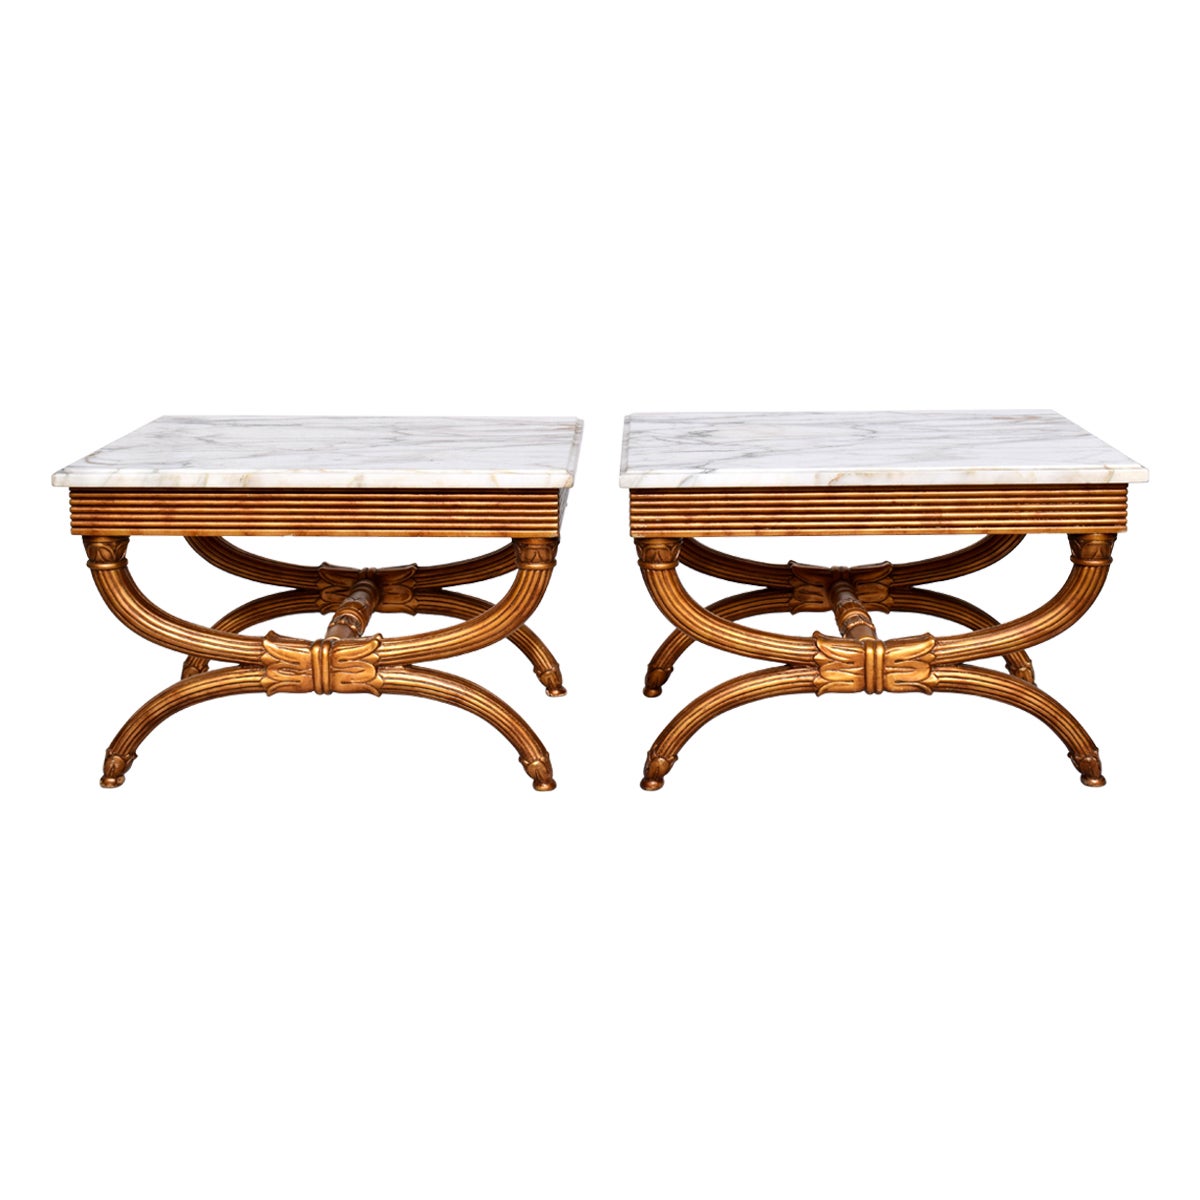 Paire de tables de style néoclassique à pieds curules en marbre